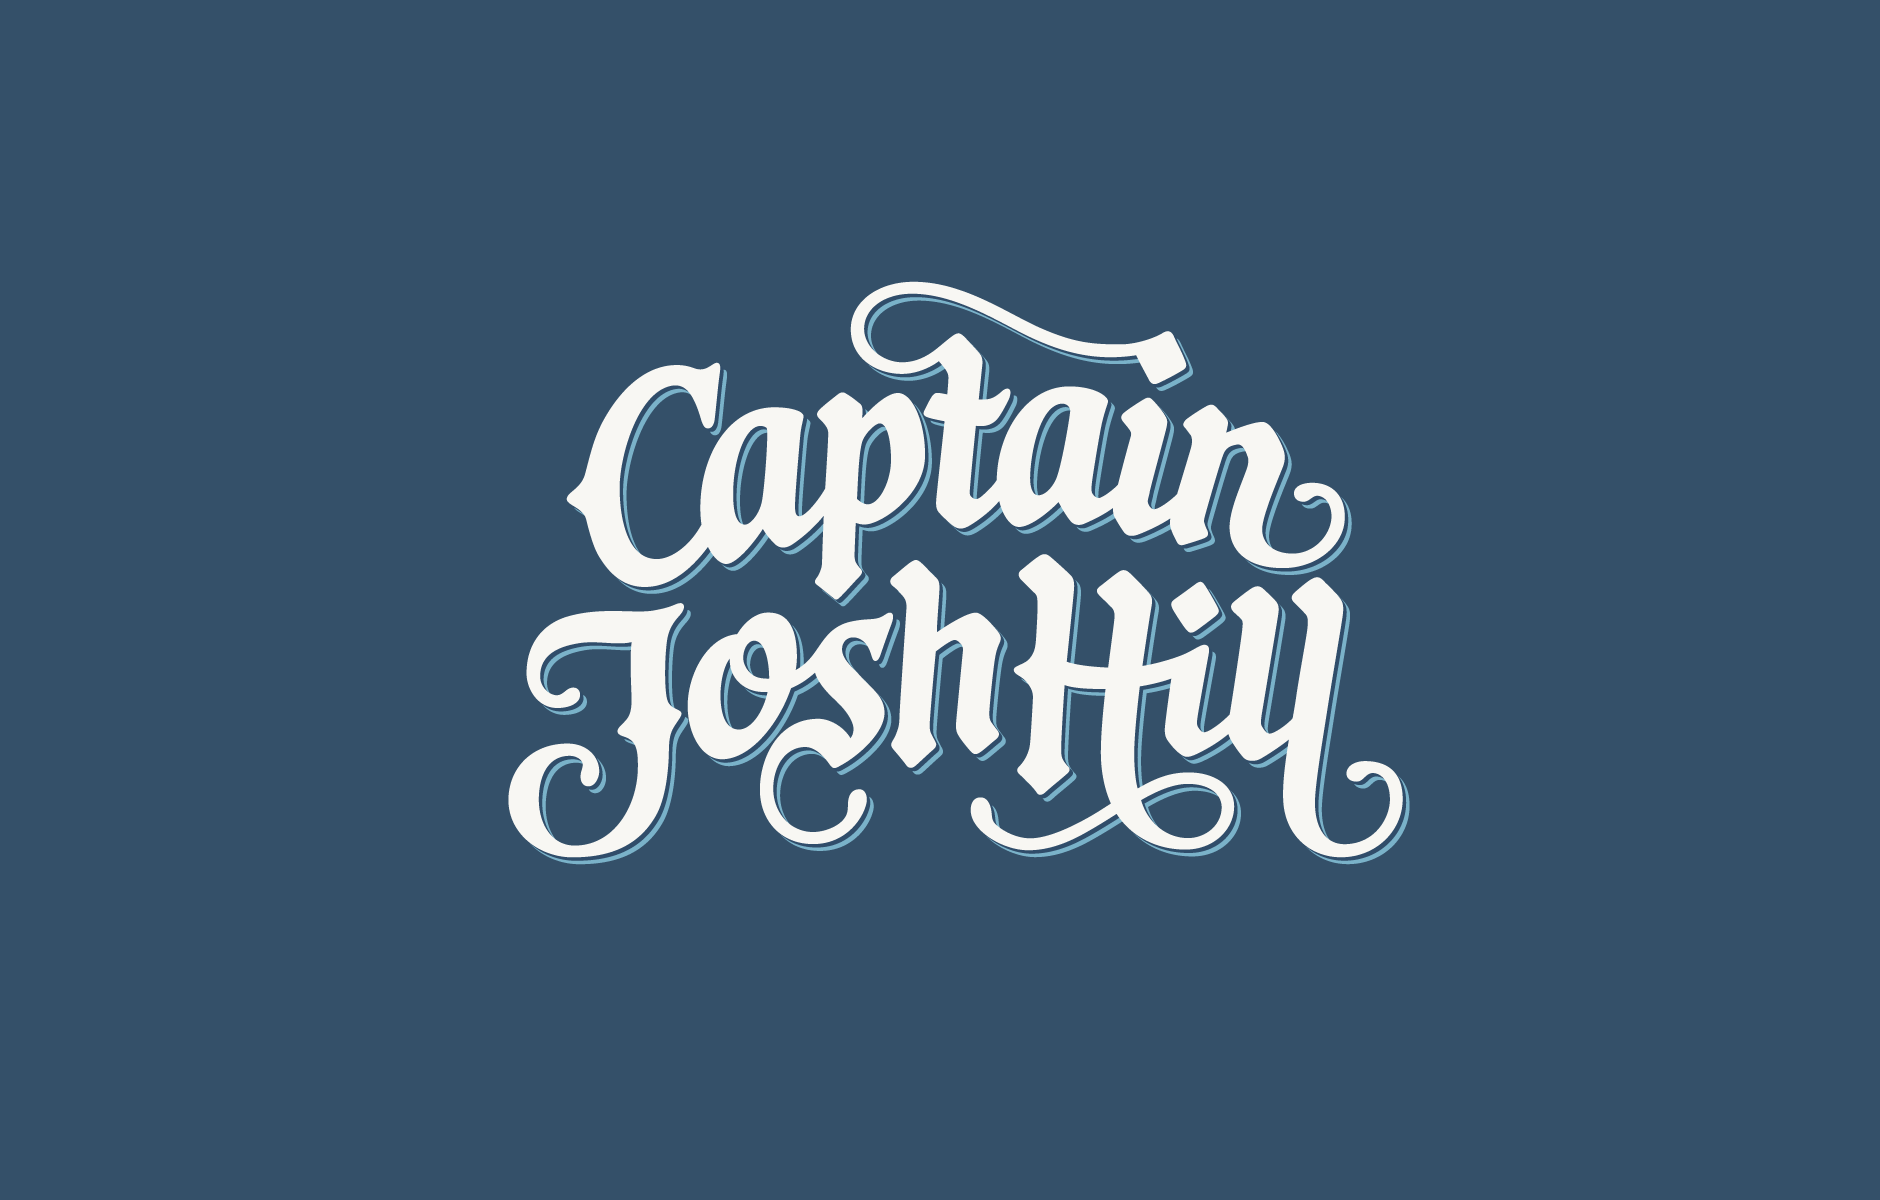 Claire Coullon // Captain Josh Hill